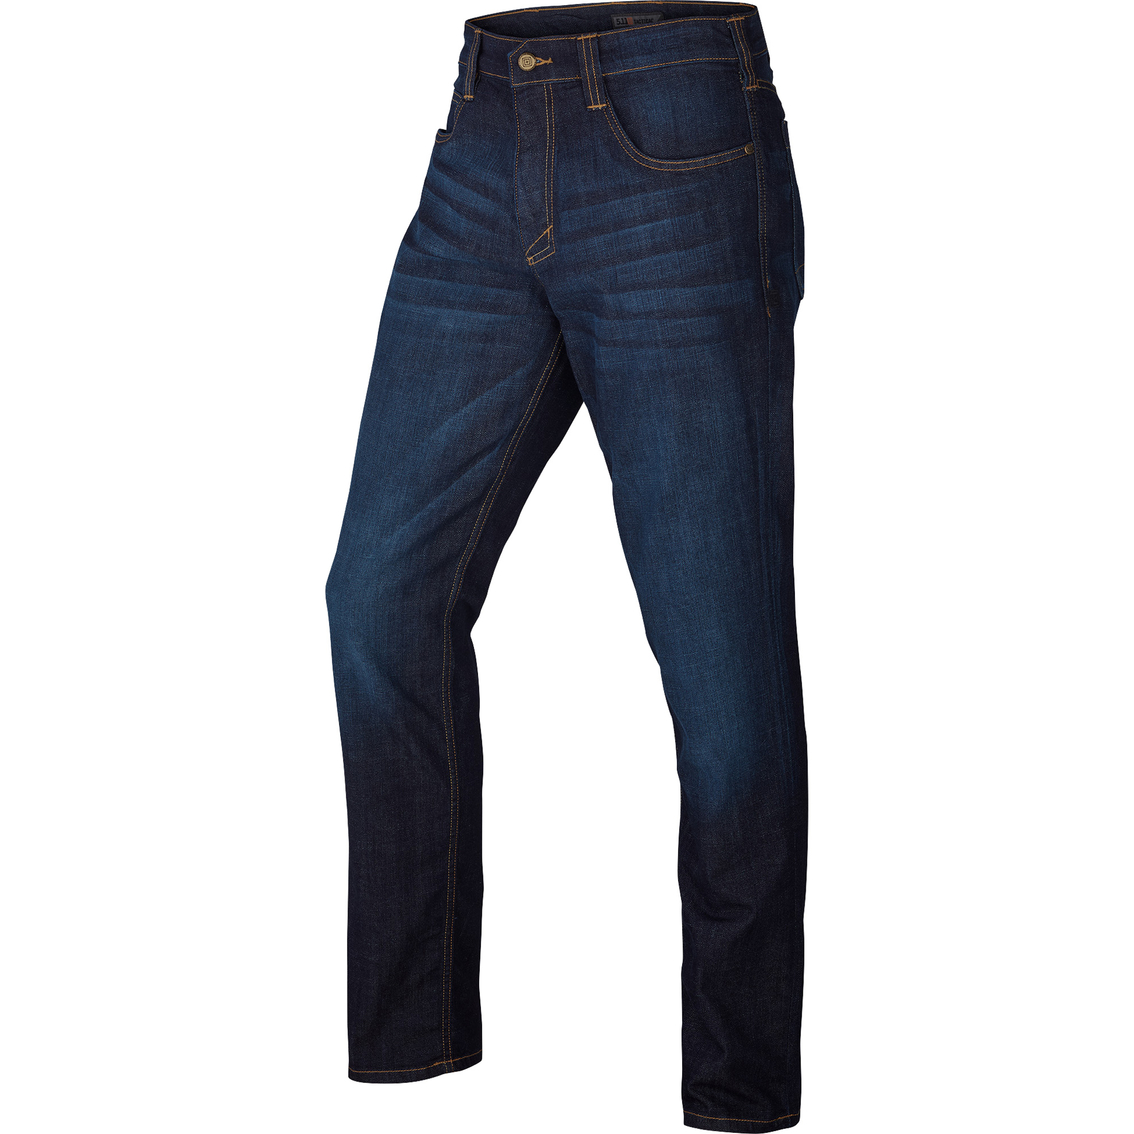 5.11 Slim Fit Defender Flex Jeans - Image 1 of 2